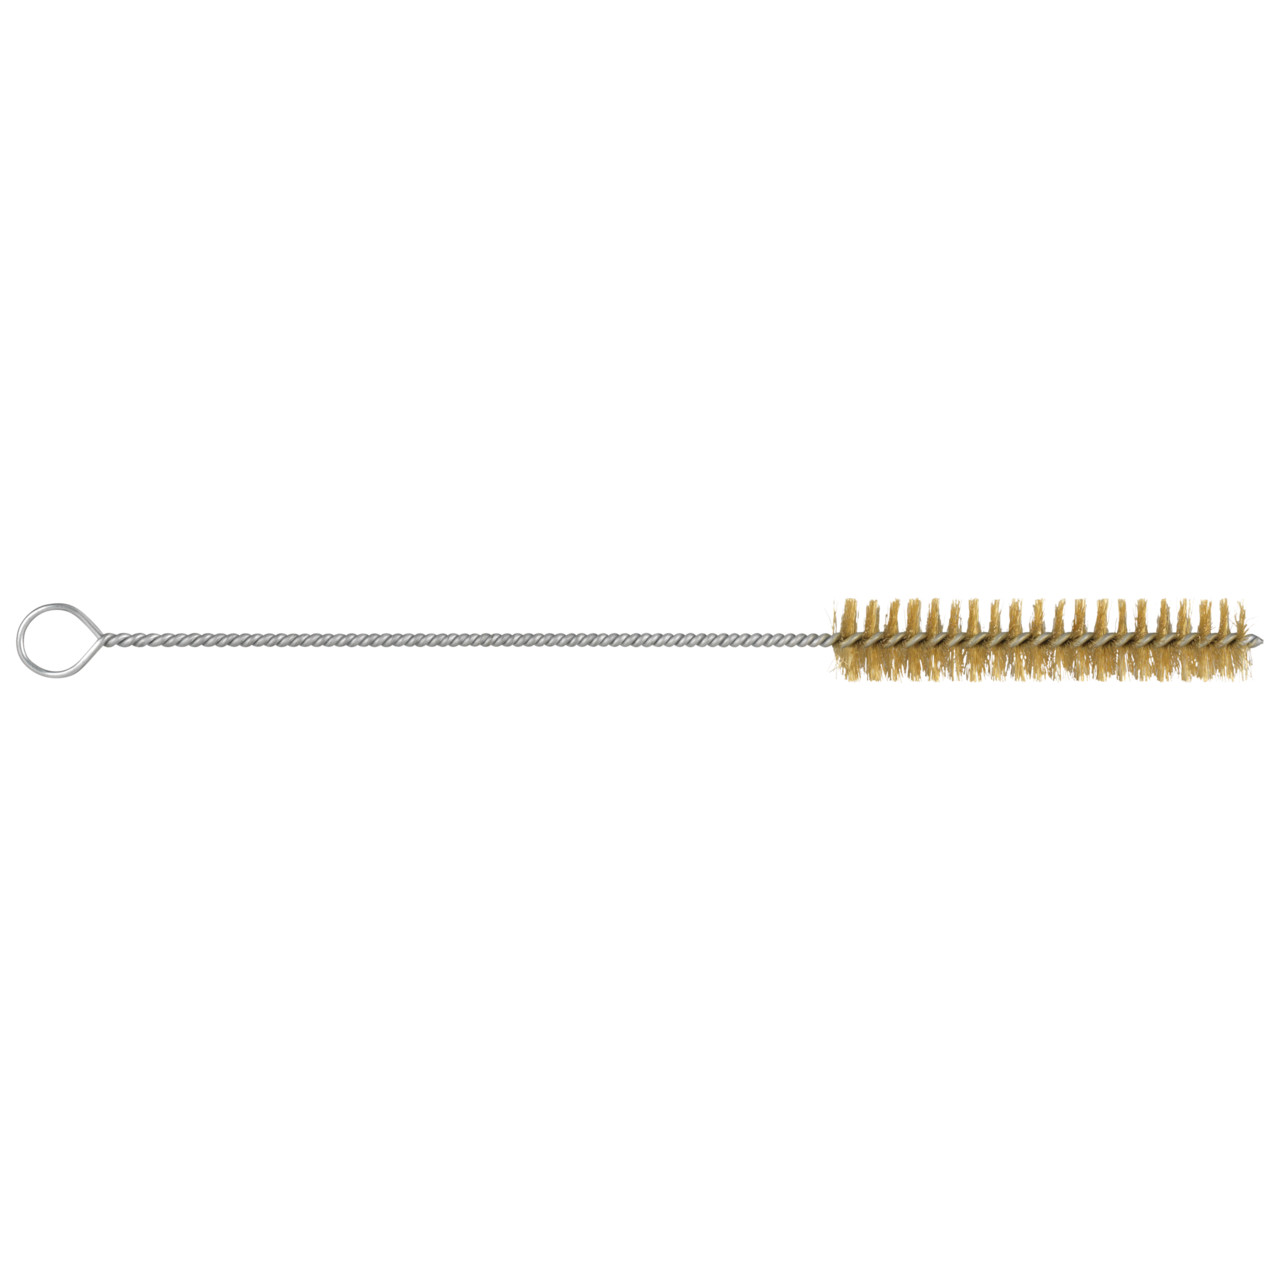 TYROLIT Cepillo cilíndrico para tubos D-I 15-300 Para metales no férricos, forma: 18ROODW - (cepillo cilíndrico para tubos), Art. 34203543